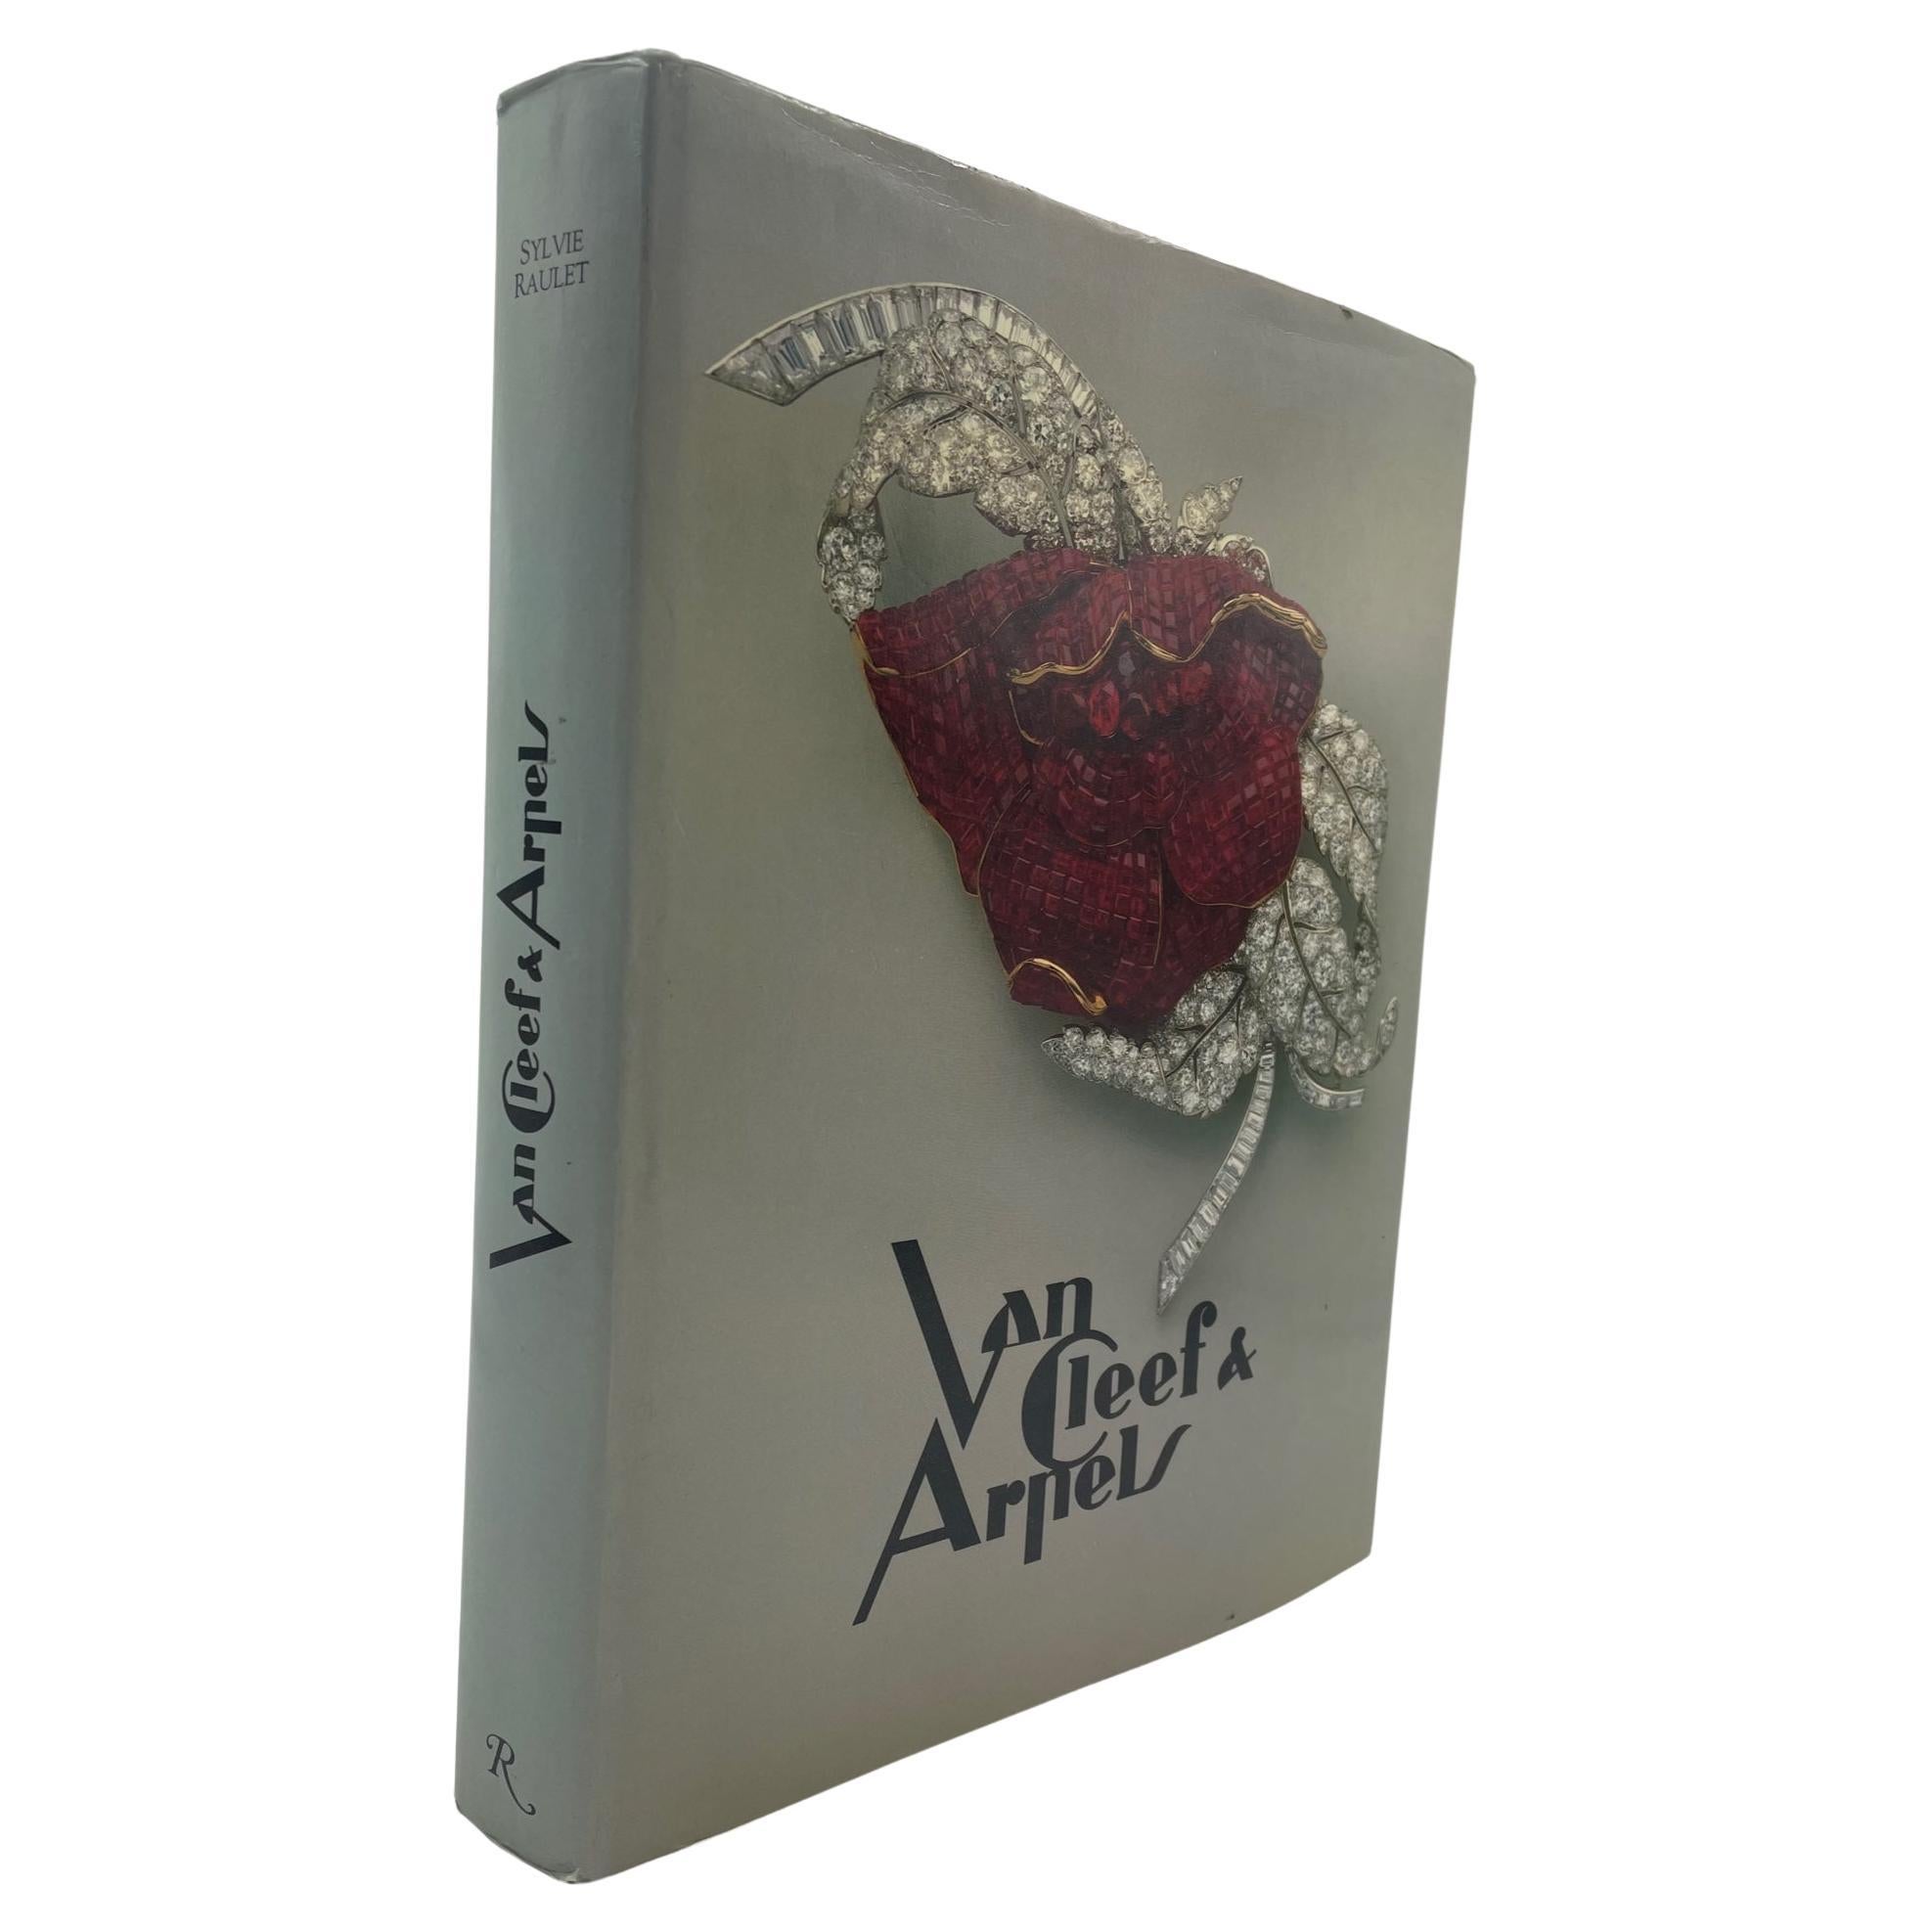 Van Cleef & Arpels by Sylvie Raulet (Book) For Sale